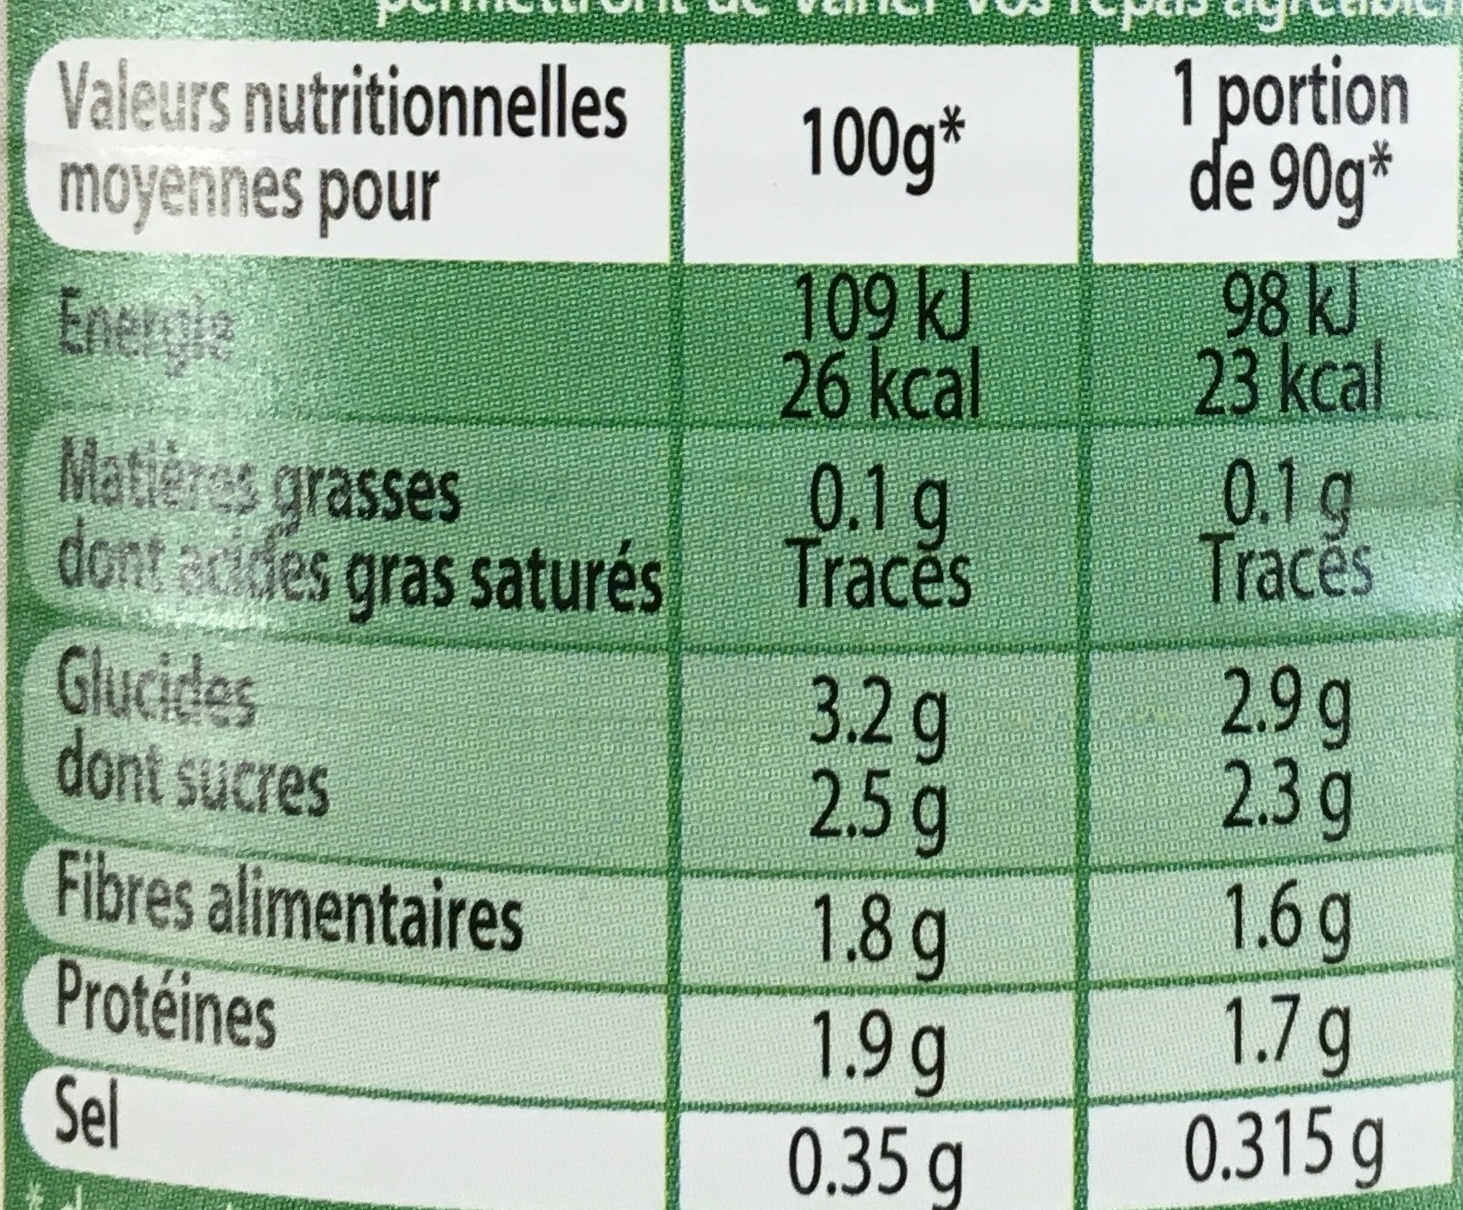 Pousses de Haricot Mungo pour fricassées et salades - Nutrition facts - fr